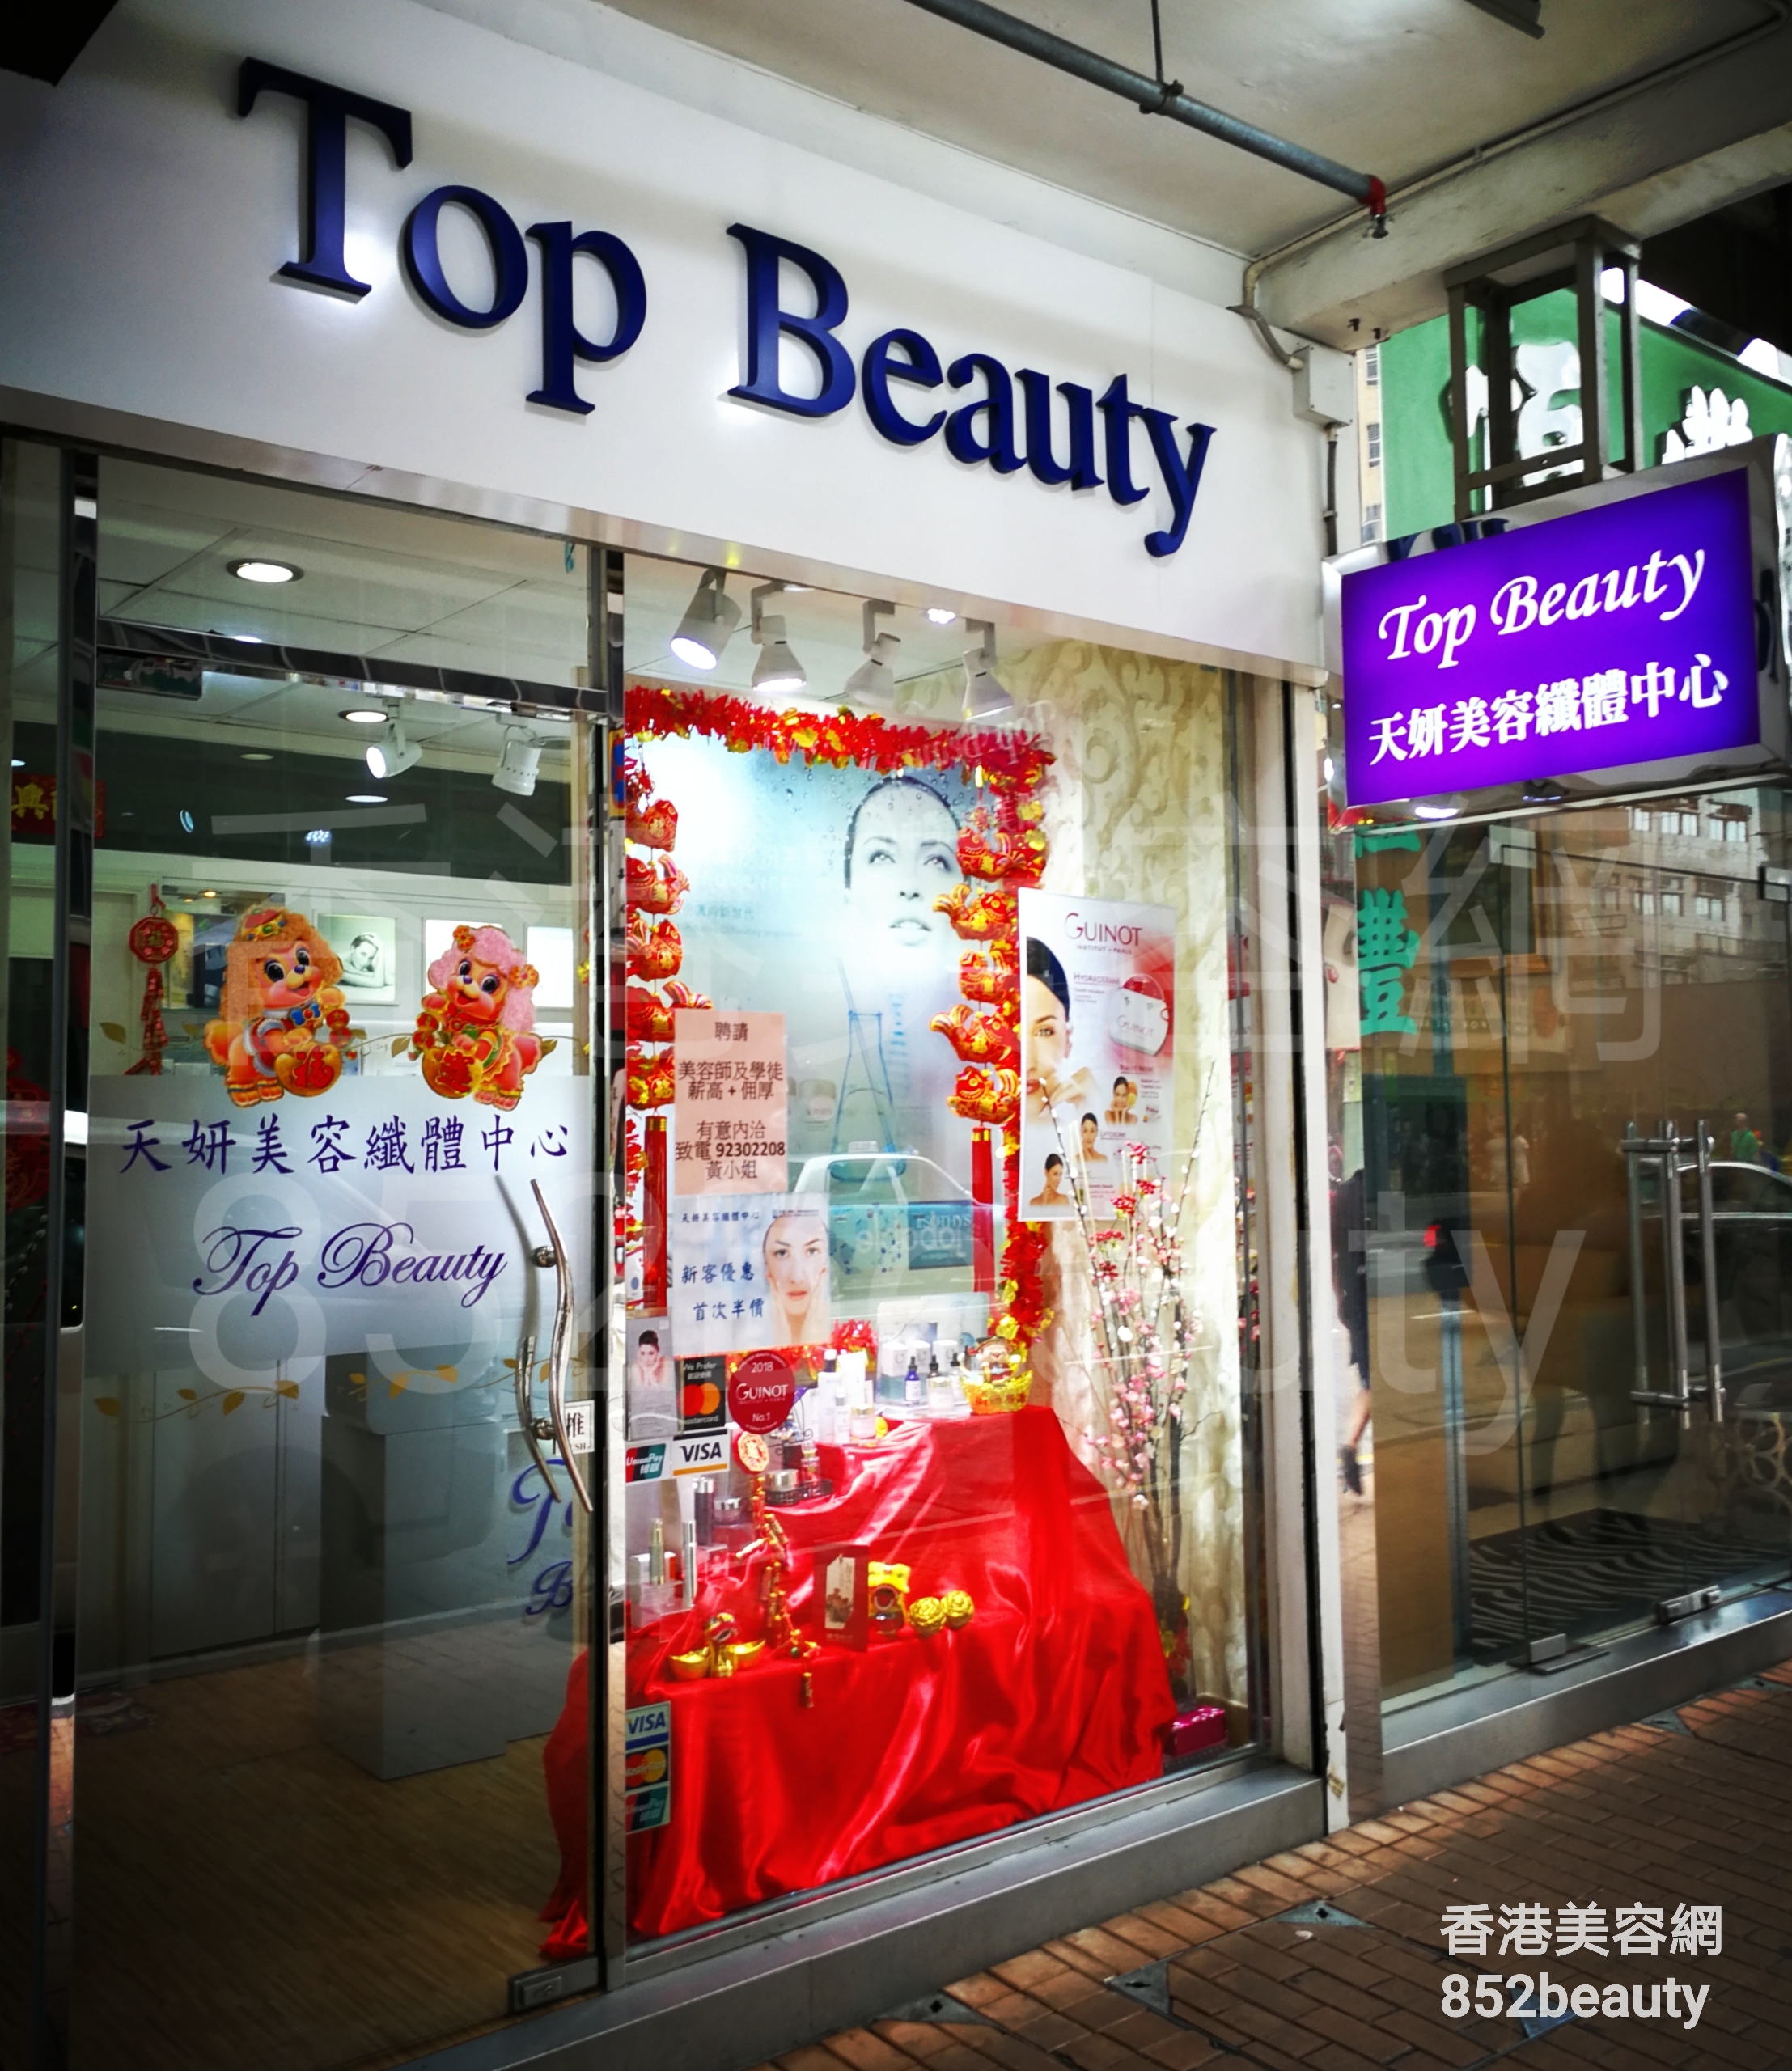 香港美容網 Hong Kong Beauty Salon 美容院 / 美容師: Top Beauty 天妍美容健美中心